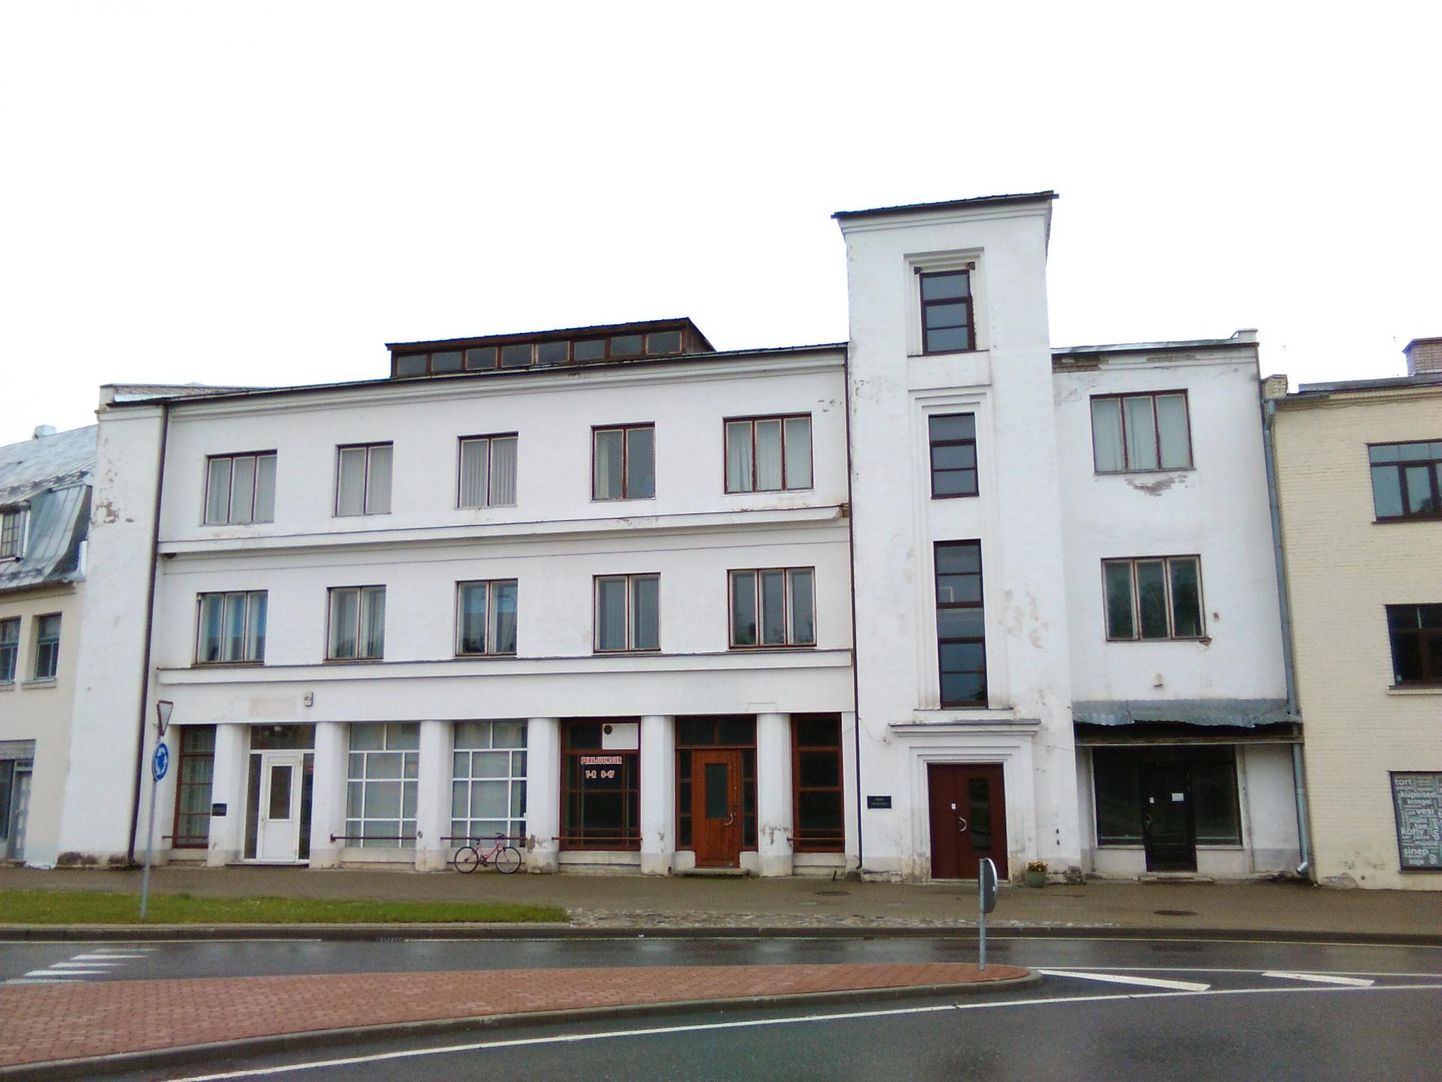 Uuendamisele läheb Tõrva tervisekeskuse hoone aadressil Tartu 4.